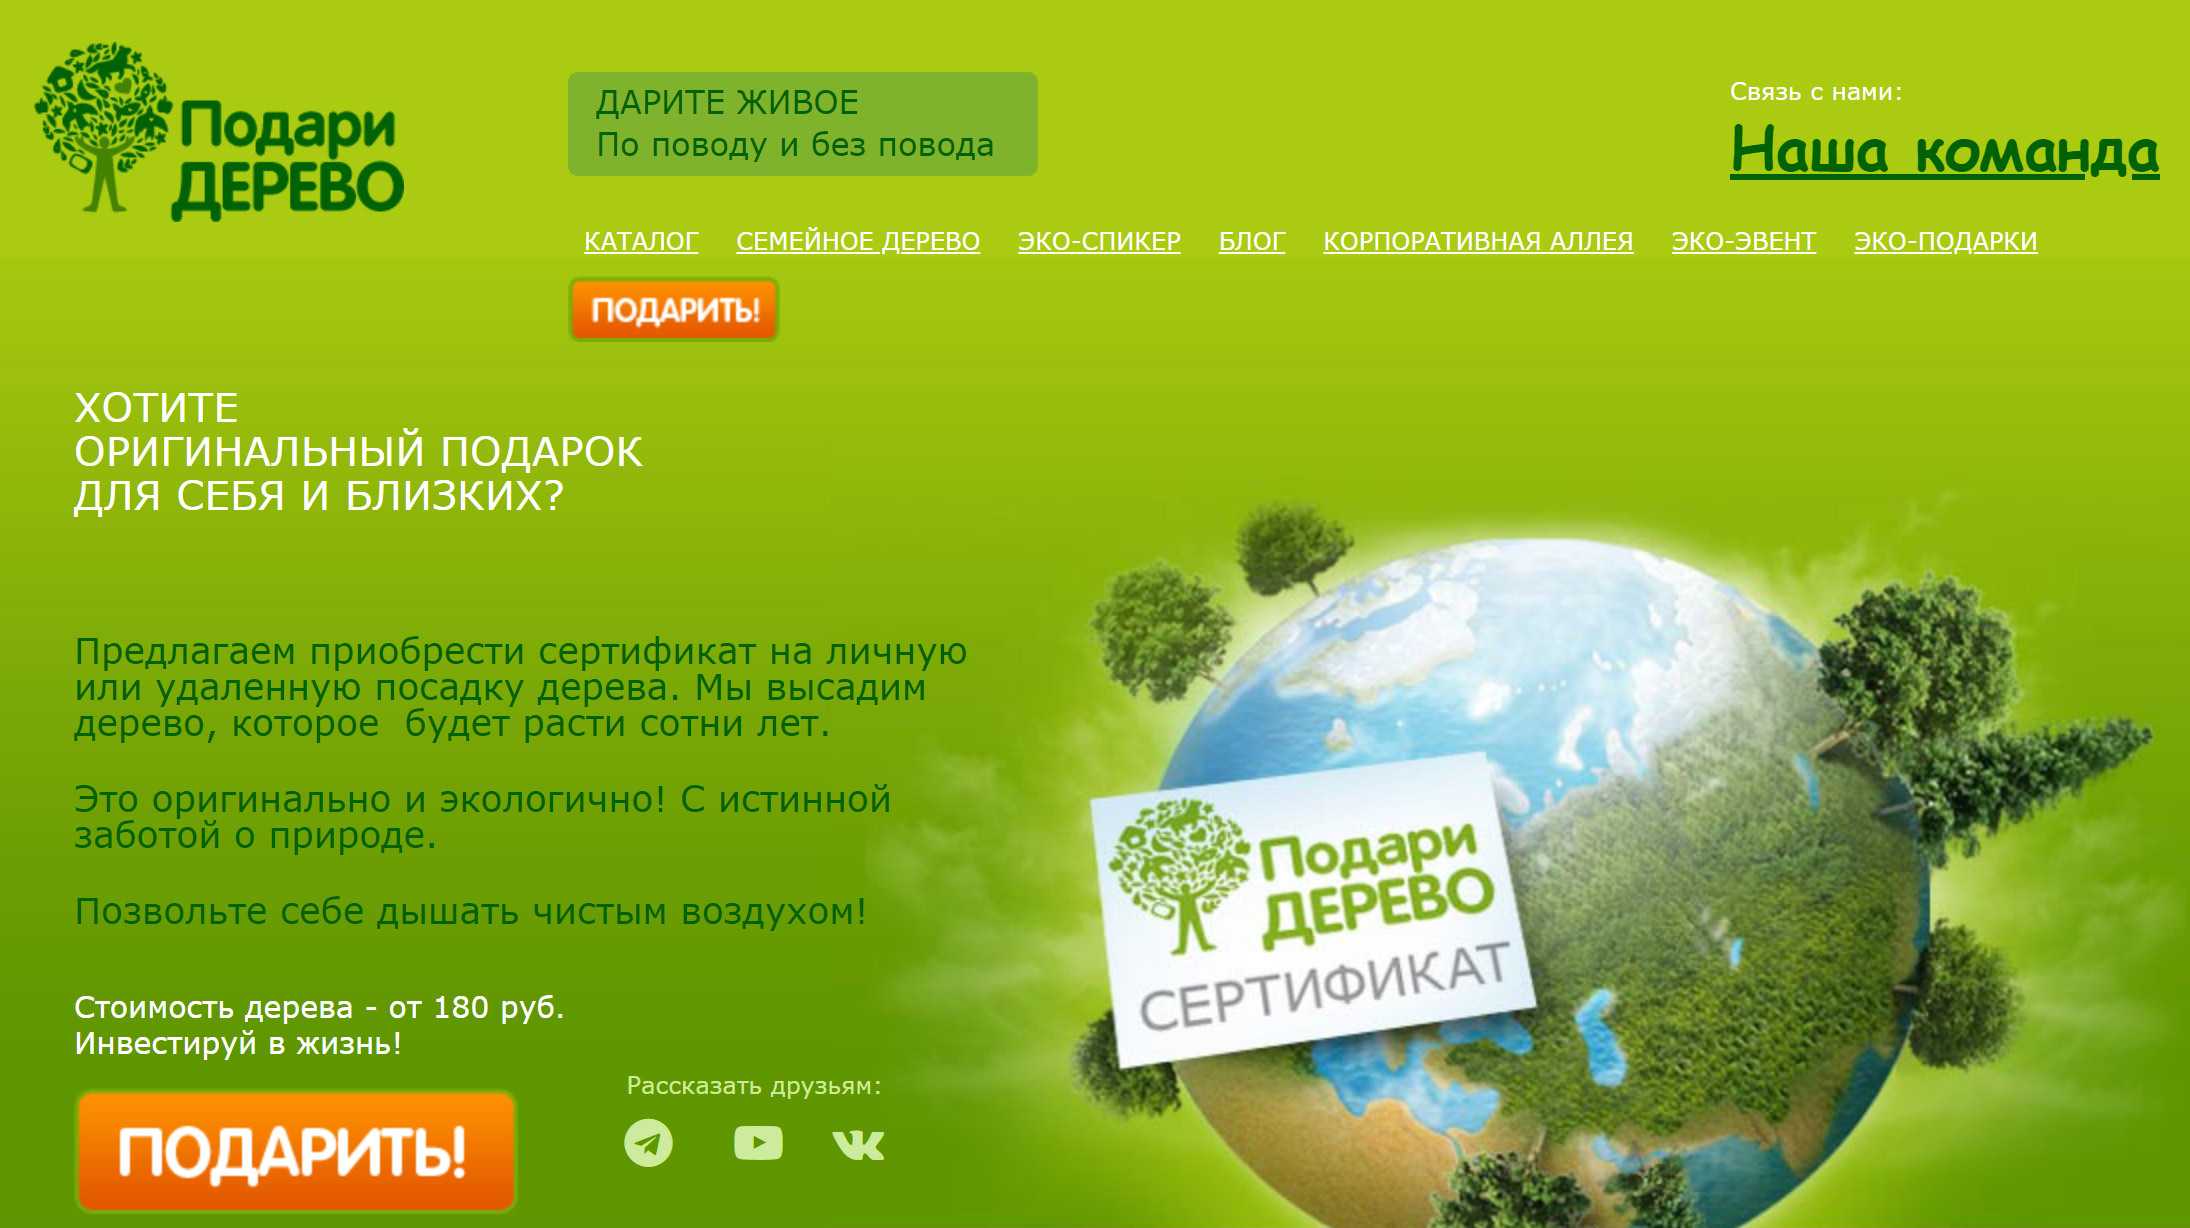 Основатели проекта считают сертификат на посадку дерева оригинальным и экологичным подарком. Источник: podari-derevo.ru